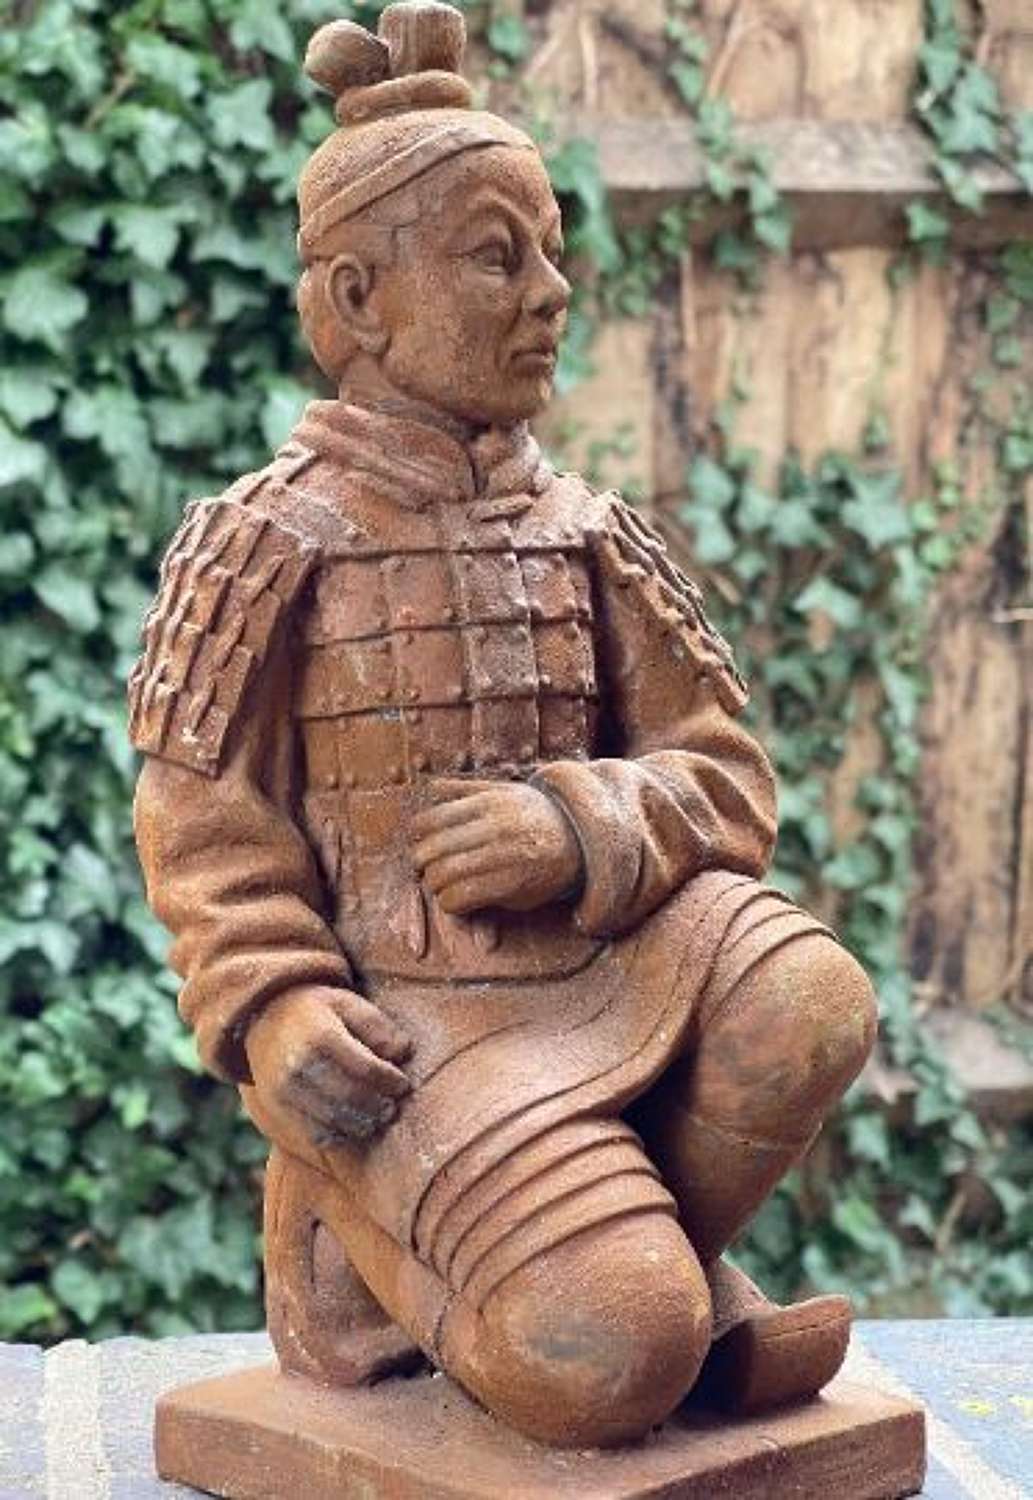 Rusty iron style Terracotta warrior